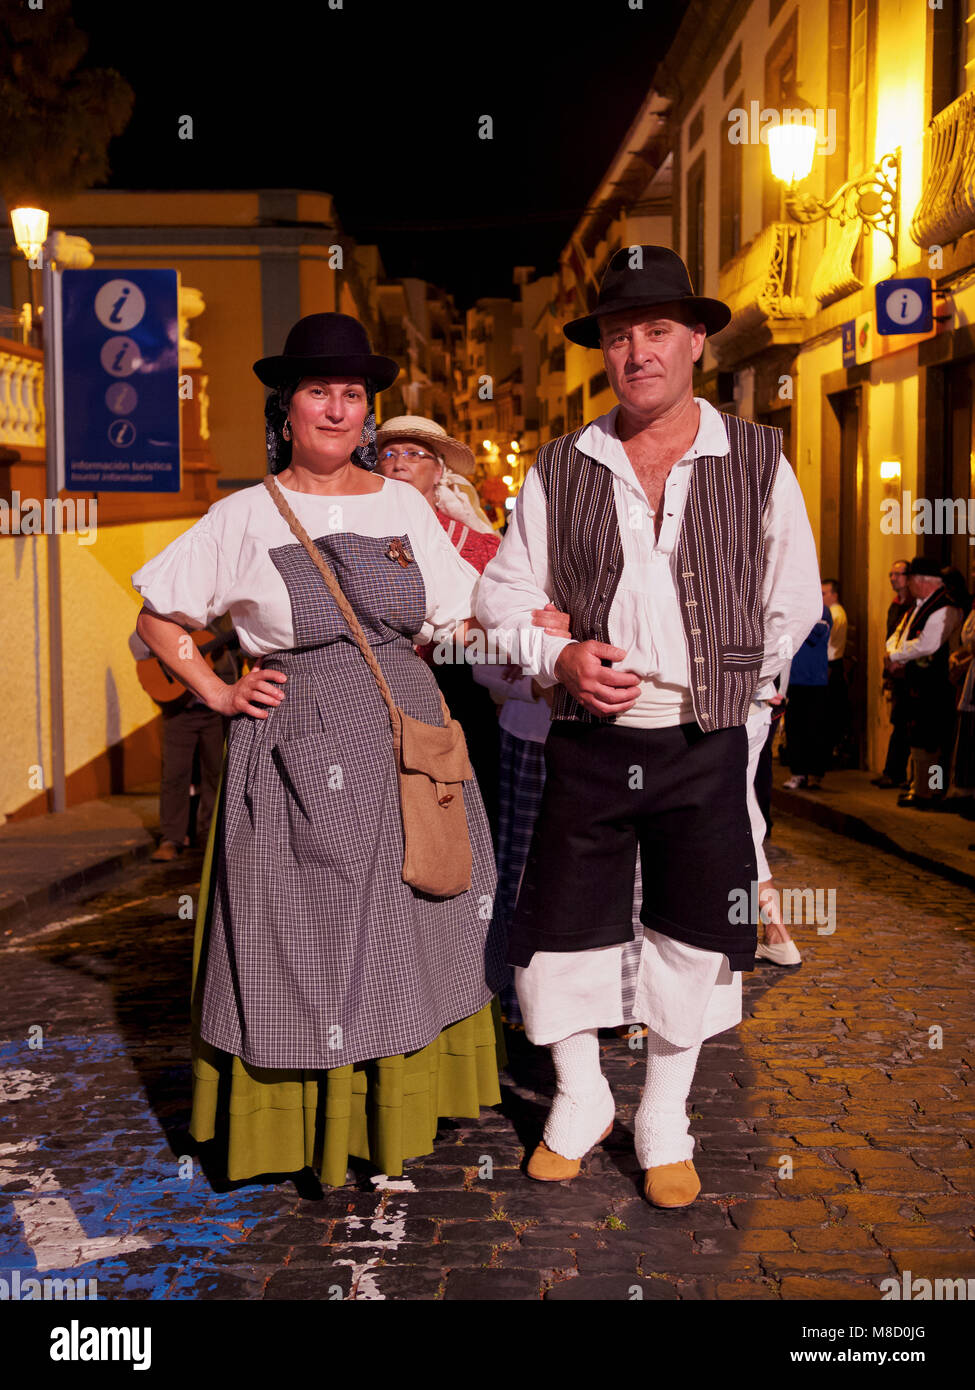 Baile de Magos, traditional street party, Icod de los Vinos, Tenerife  Island, Canary Islands, Spain Stock Photo - Alamy